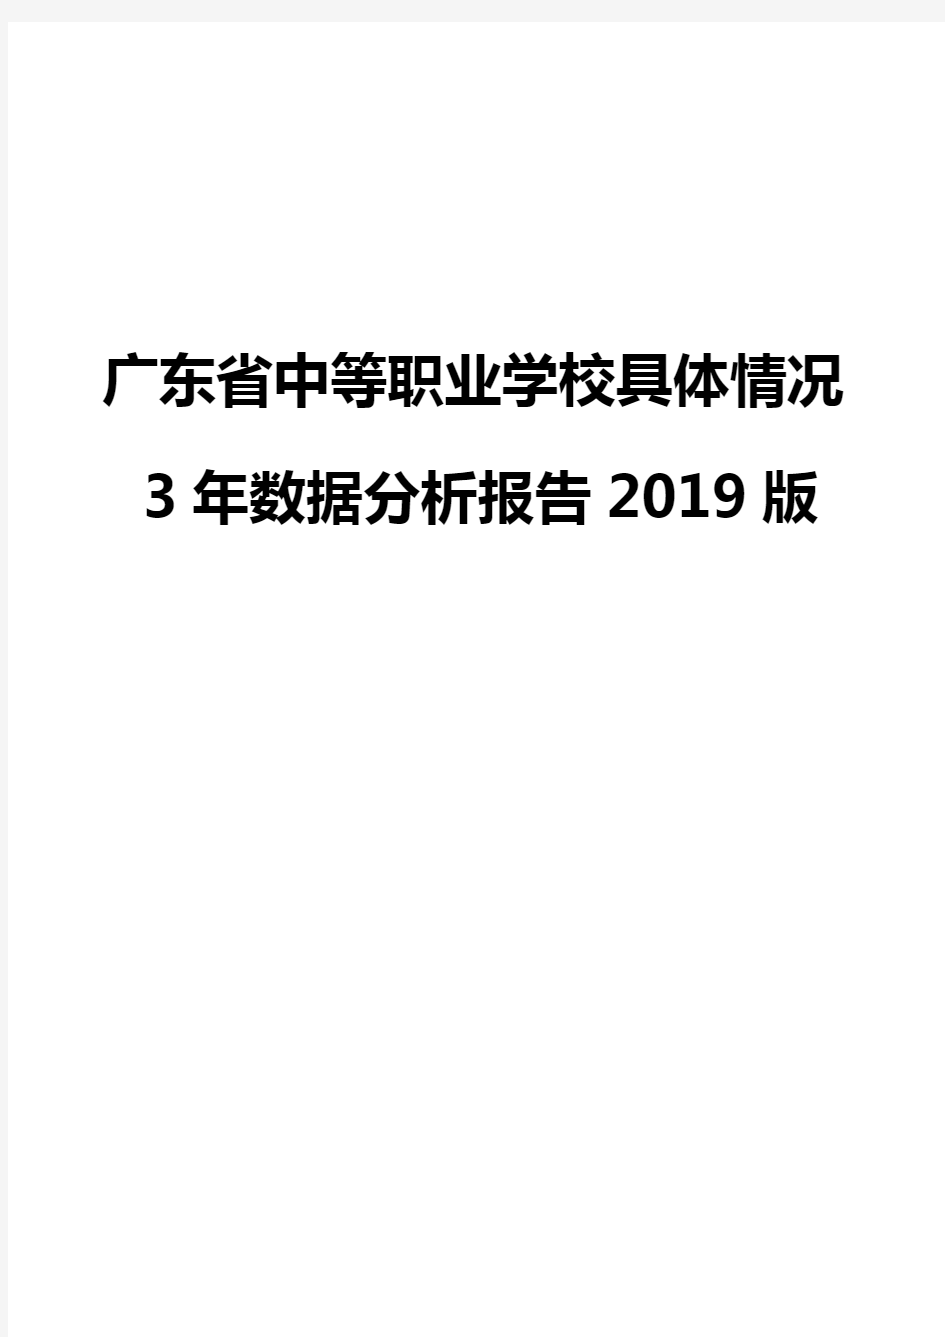 广东省中等职业学校具体情况3年数据分析报告2019版